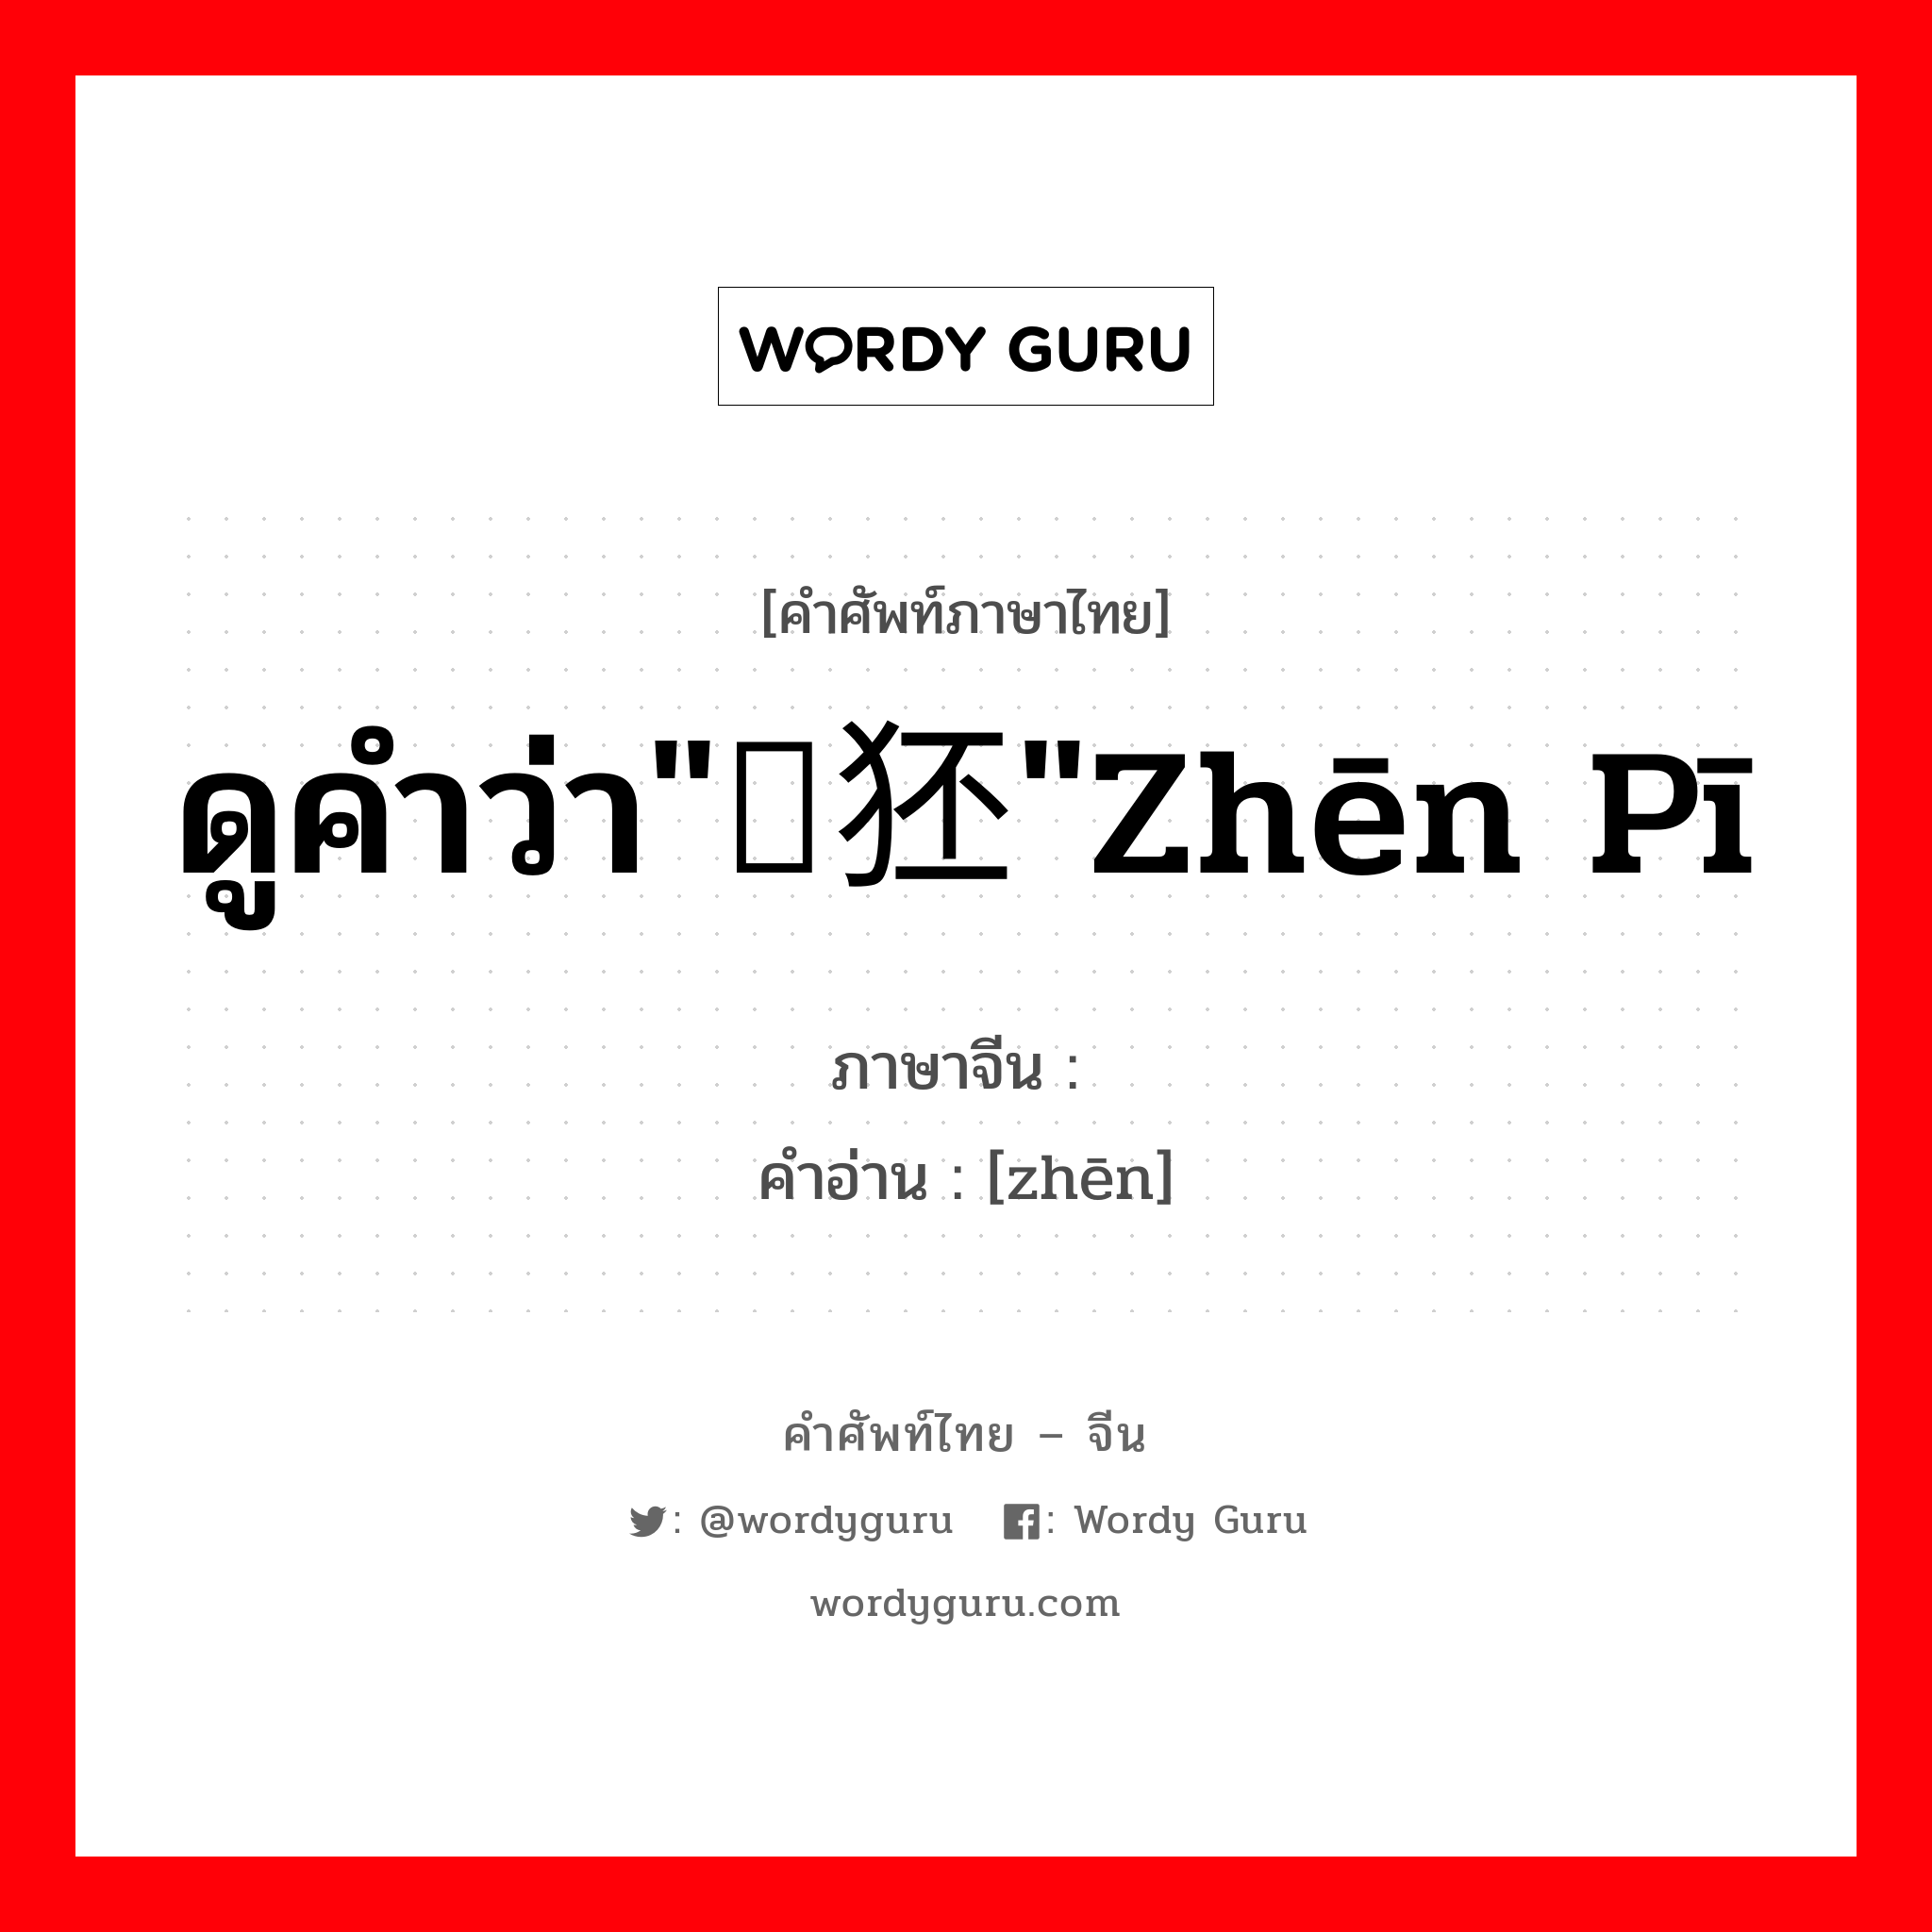 ดูคำว่า"獉狉"zhēn pī ภาษาจีนคืออะไร, คำศัพท์ภาษาไทย - จีน ดูคำว่า"獉狉"zhēn pī ภาษาจีน 獉 คำอ่าน [zhēn]